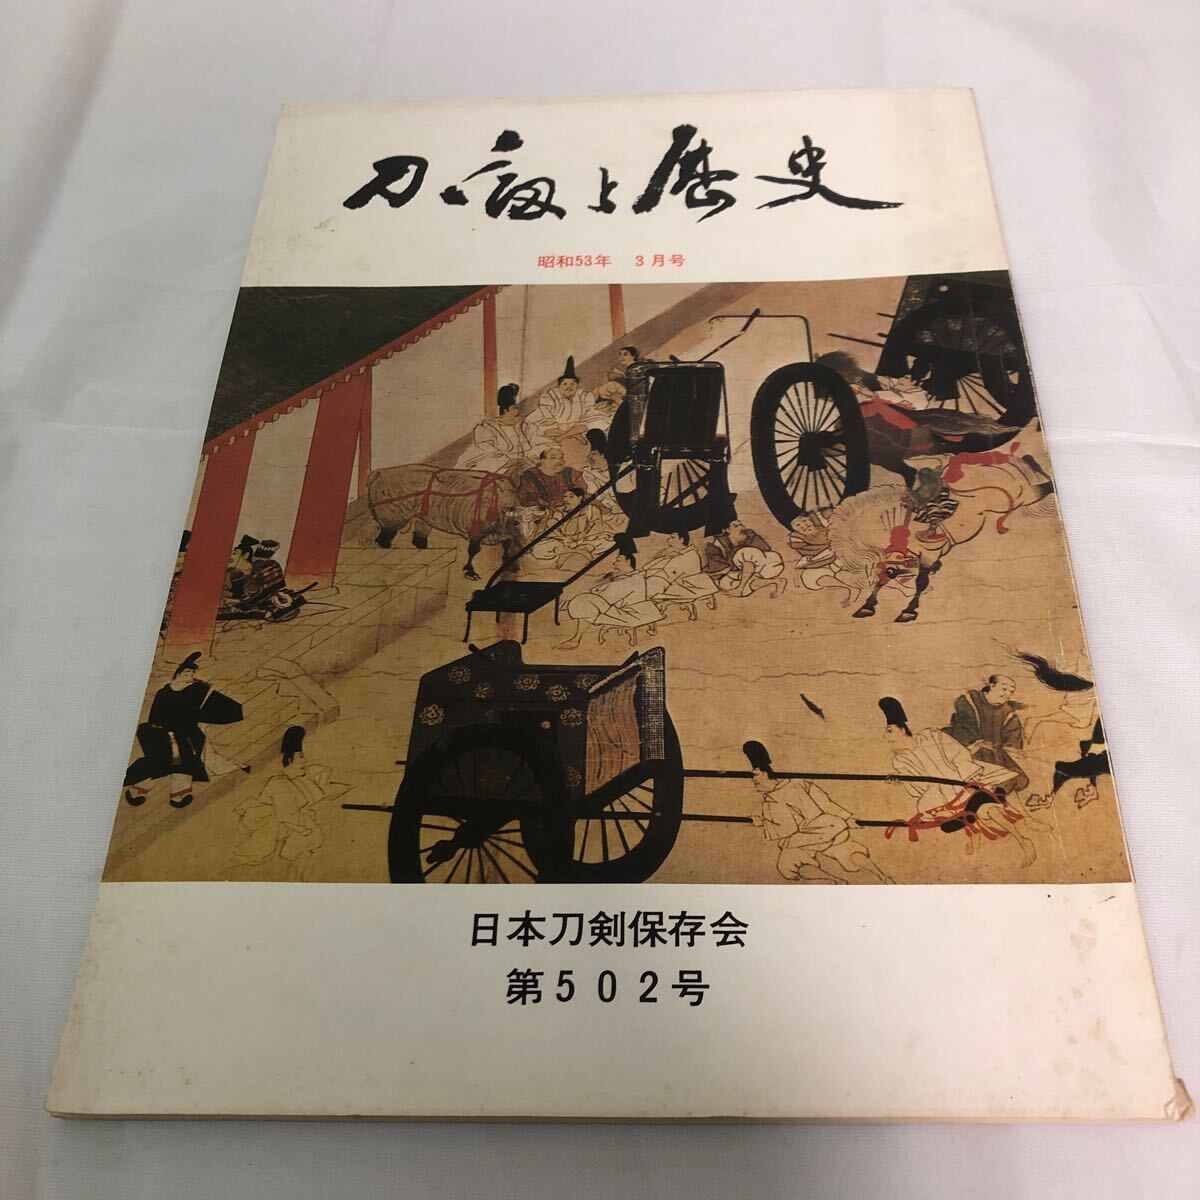 刀剣と歴史 昭和53年 3月号 日本刀剣保存会 第502号の画像1